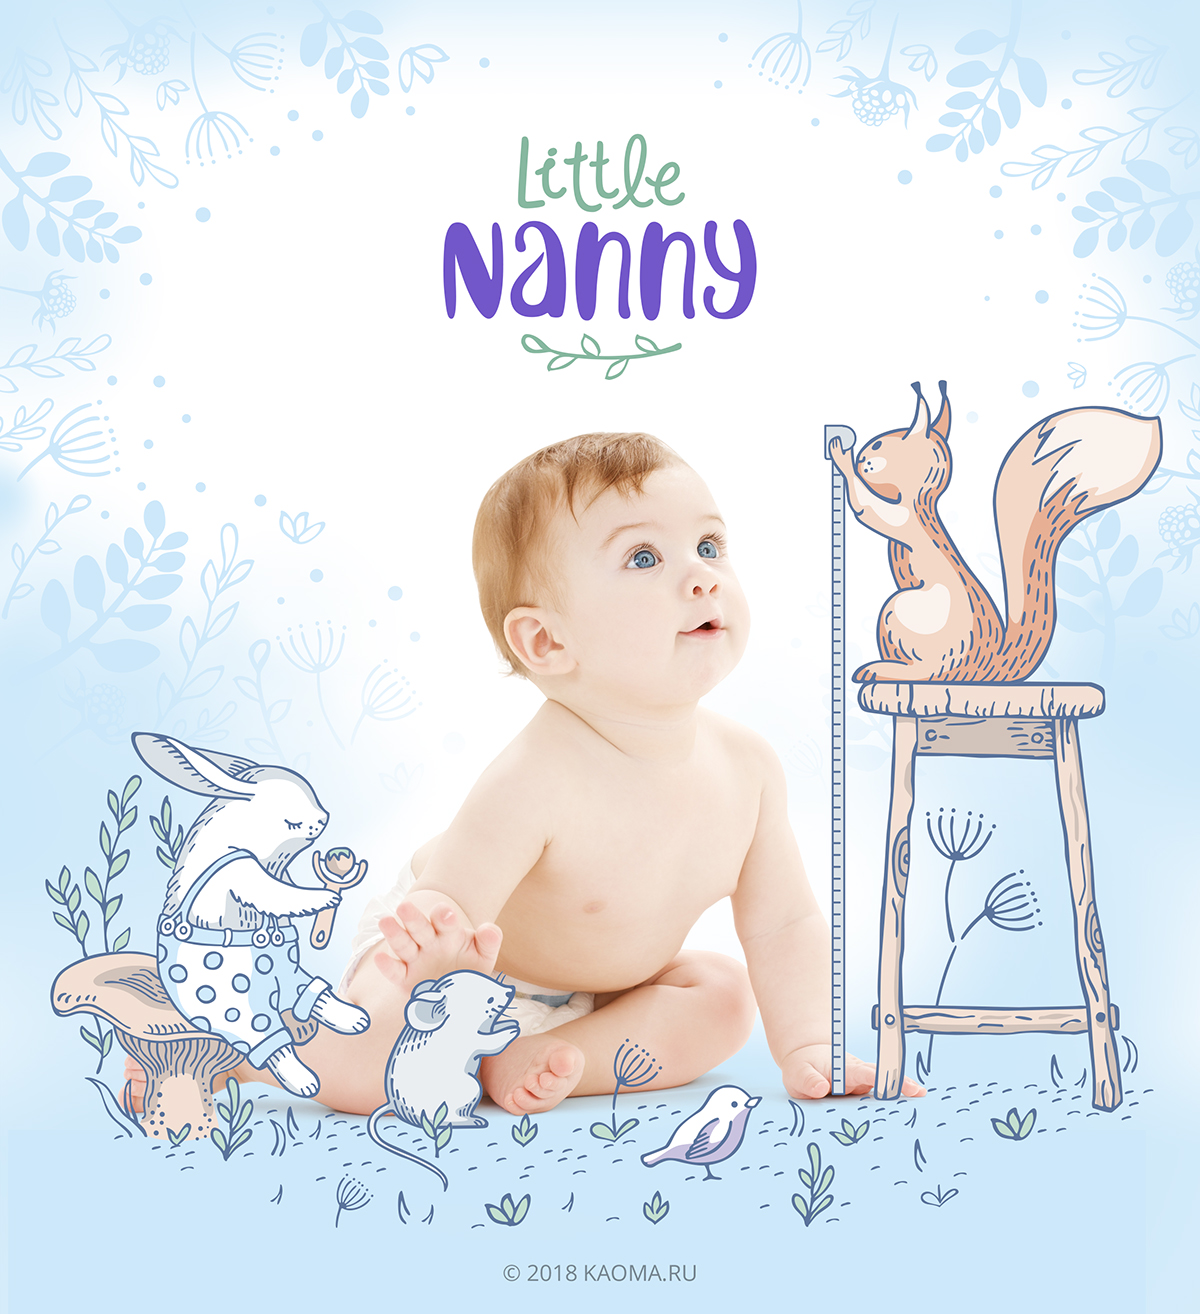 Персонажи для косметики бренда Little Nanny 